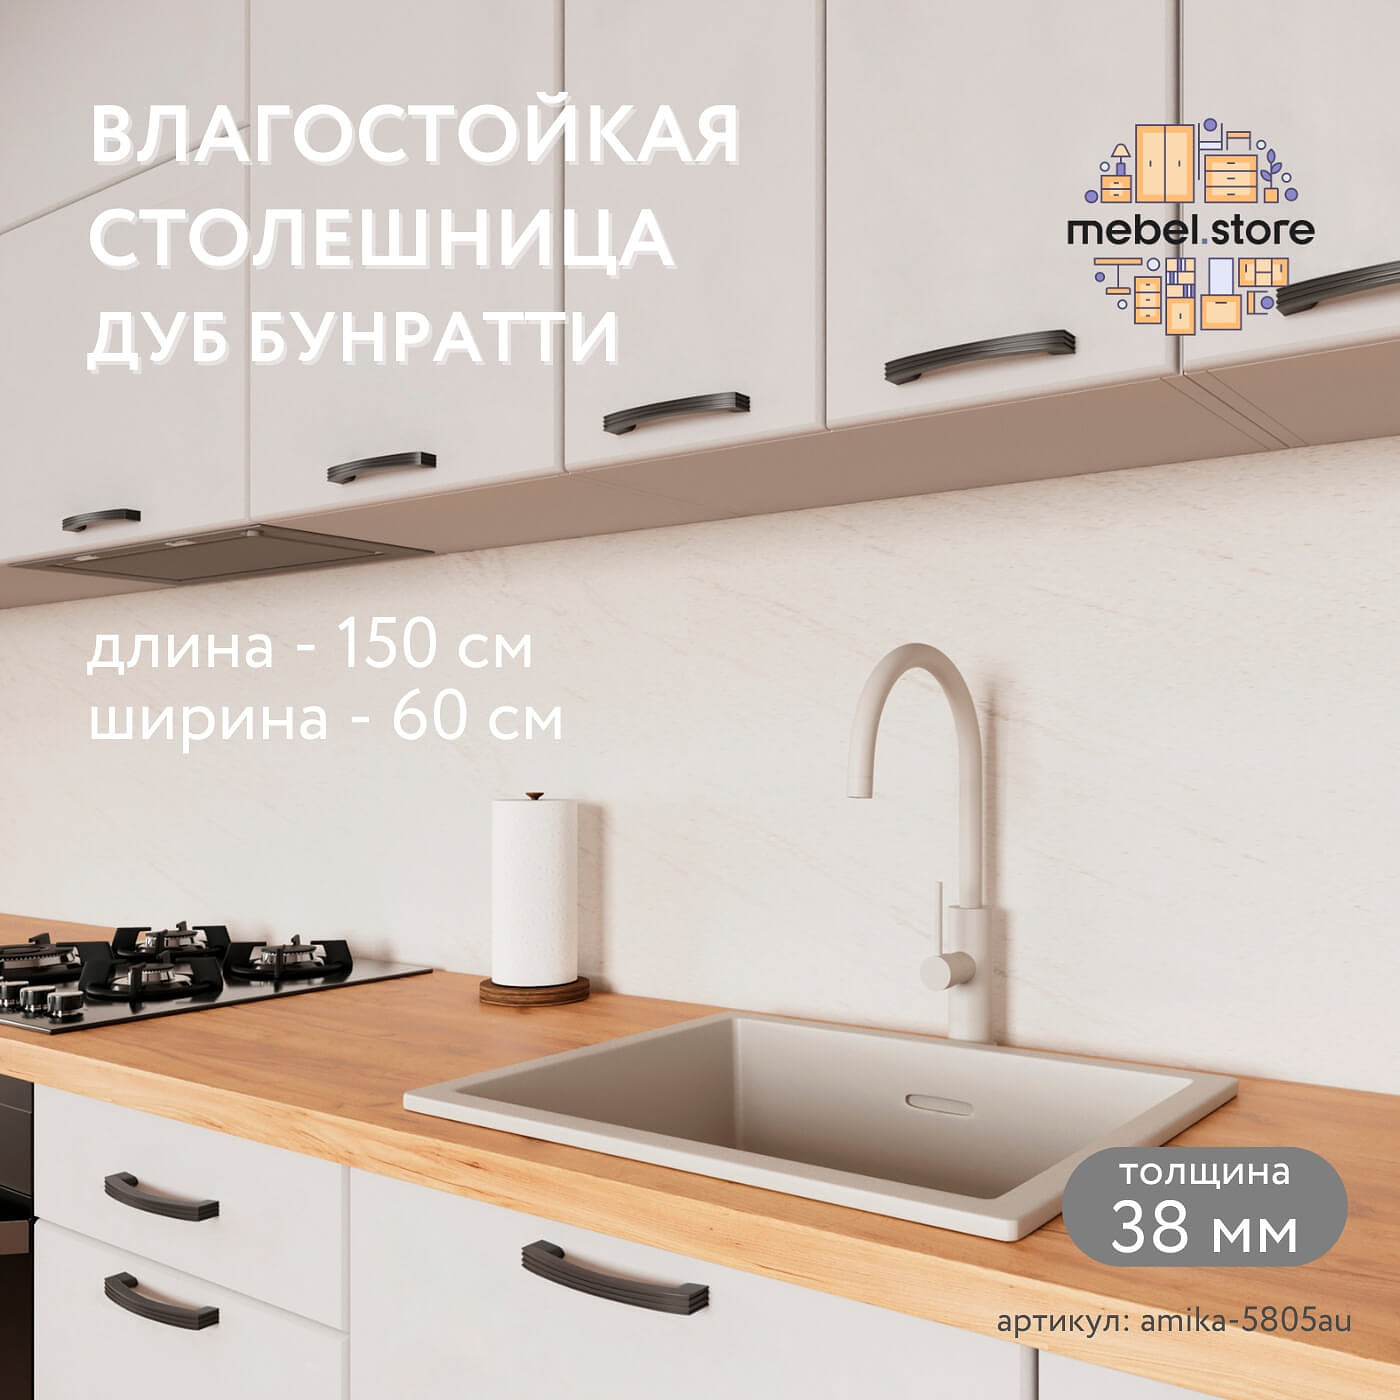 Столешница Амика-5805au минимализм для кухни - фото 1 large